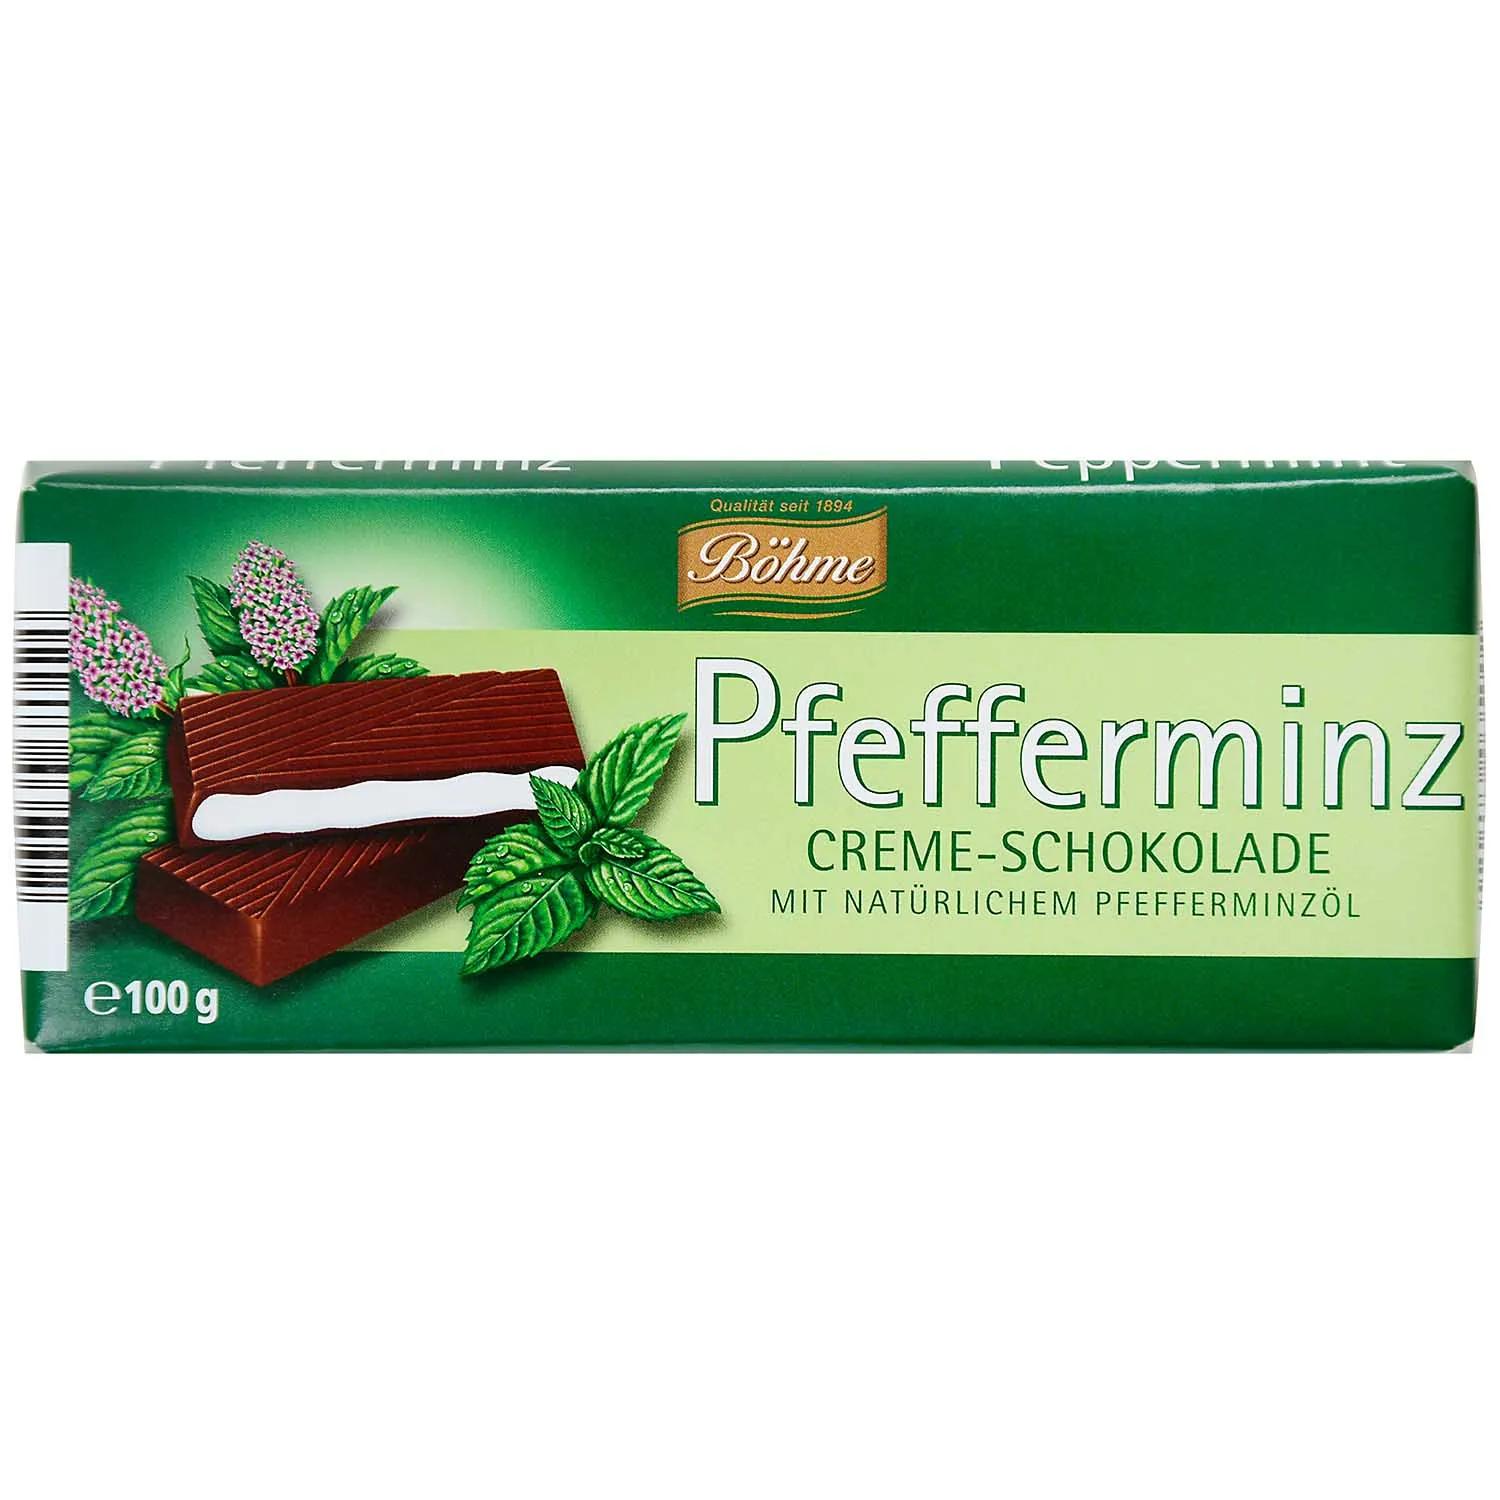 Böhme Pfefferminz Creme-Schokolade 100g | Online kaufen im World of ...